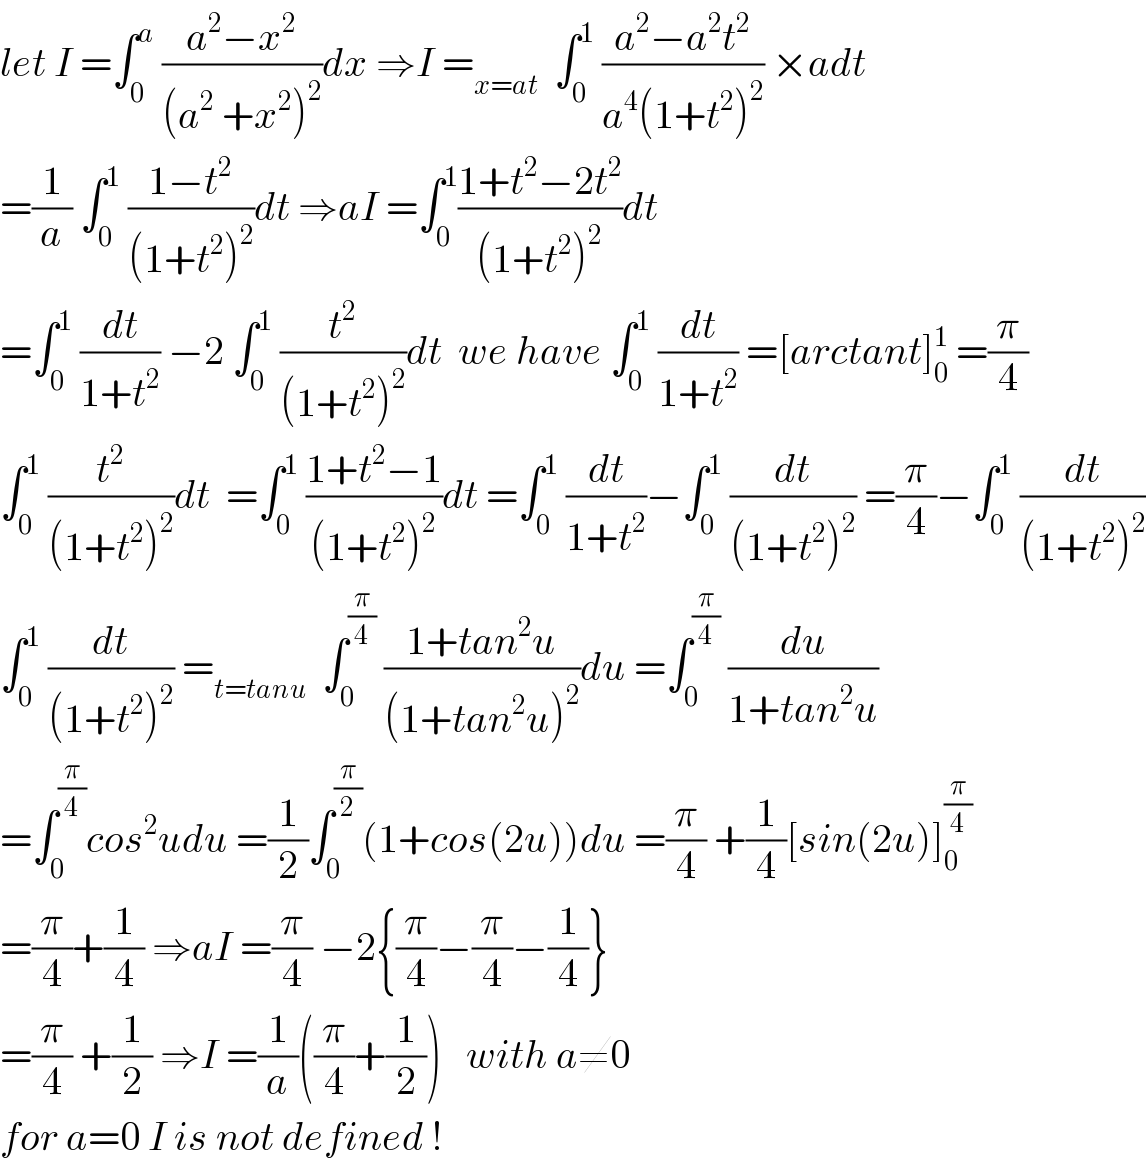 let I =∫_0 ^a  ((a^2 −x^2 )/((a^2  +x^2 )^2 ))dx ⇒I =_(x=at)   ∫_0 ^1  ((a^2 −a^2 t^2 )/(a^4 (1+t^2 )^2 )) ×adt  =(1/a) ∫_0 ^1  ((1−t^2 )/((1+t^2 )^2 ))dt ⇒aI =∫_0 ^1 ((1+t^2 −2t^2 )/((1+t^2 )^2 ))dt  =∫_0 ^1  (dt/(1+t^2 )) −2 ∫_0 ^1  (t^2 /((1+t^2 )^2 ))dt  we have ∫_0 ^1  (dt/(1+t^2 )) =[arctant]_0 ^1  =(π/4)  ∫_0 ^1  (t^2 /((1+t^2 )^2 ))dt  =∫_0 ^1  ((1+t^2 −1)/((1+t^2 )^2 ))dt =∫_0 ^1  (dt/(1+t^2 ))−∫_0 ^1  (dt/((1+t^2 )^2 )) =(π/4)−∫_0 ^1  (dt/((1+t^2 )^2 ))  ∫_0 ^1  (dt/((1+t^2 )^2 )) =_(t=tanu)   ∫_0 ^(π/4)  ((1+tan^2 u)/((1+tan^2 u)^2 ))du =∫_0 ^(π/4)  (du/(1+tan^2 u))  =∫_0 ^(π/4) cos^2 udu =(1/2)∫_0 ^(π/2) (1+cos(2u))du =(π/4) +(1/4)[sin(2u)]_0 ^(π/4)   =(π/4)+(1/4) ⇒aI =(π/4) −2{(π/4)−(π/4)−(1/4)}  =(π/4) +(1/2) ⇒I =(1/a)((π/4)+(1/2))   with a≠0   for a=0 I is not defined !  